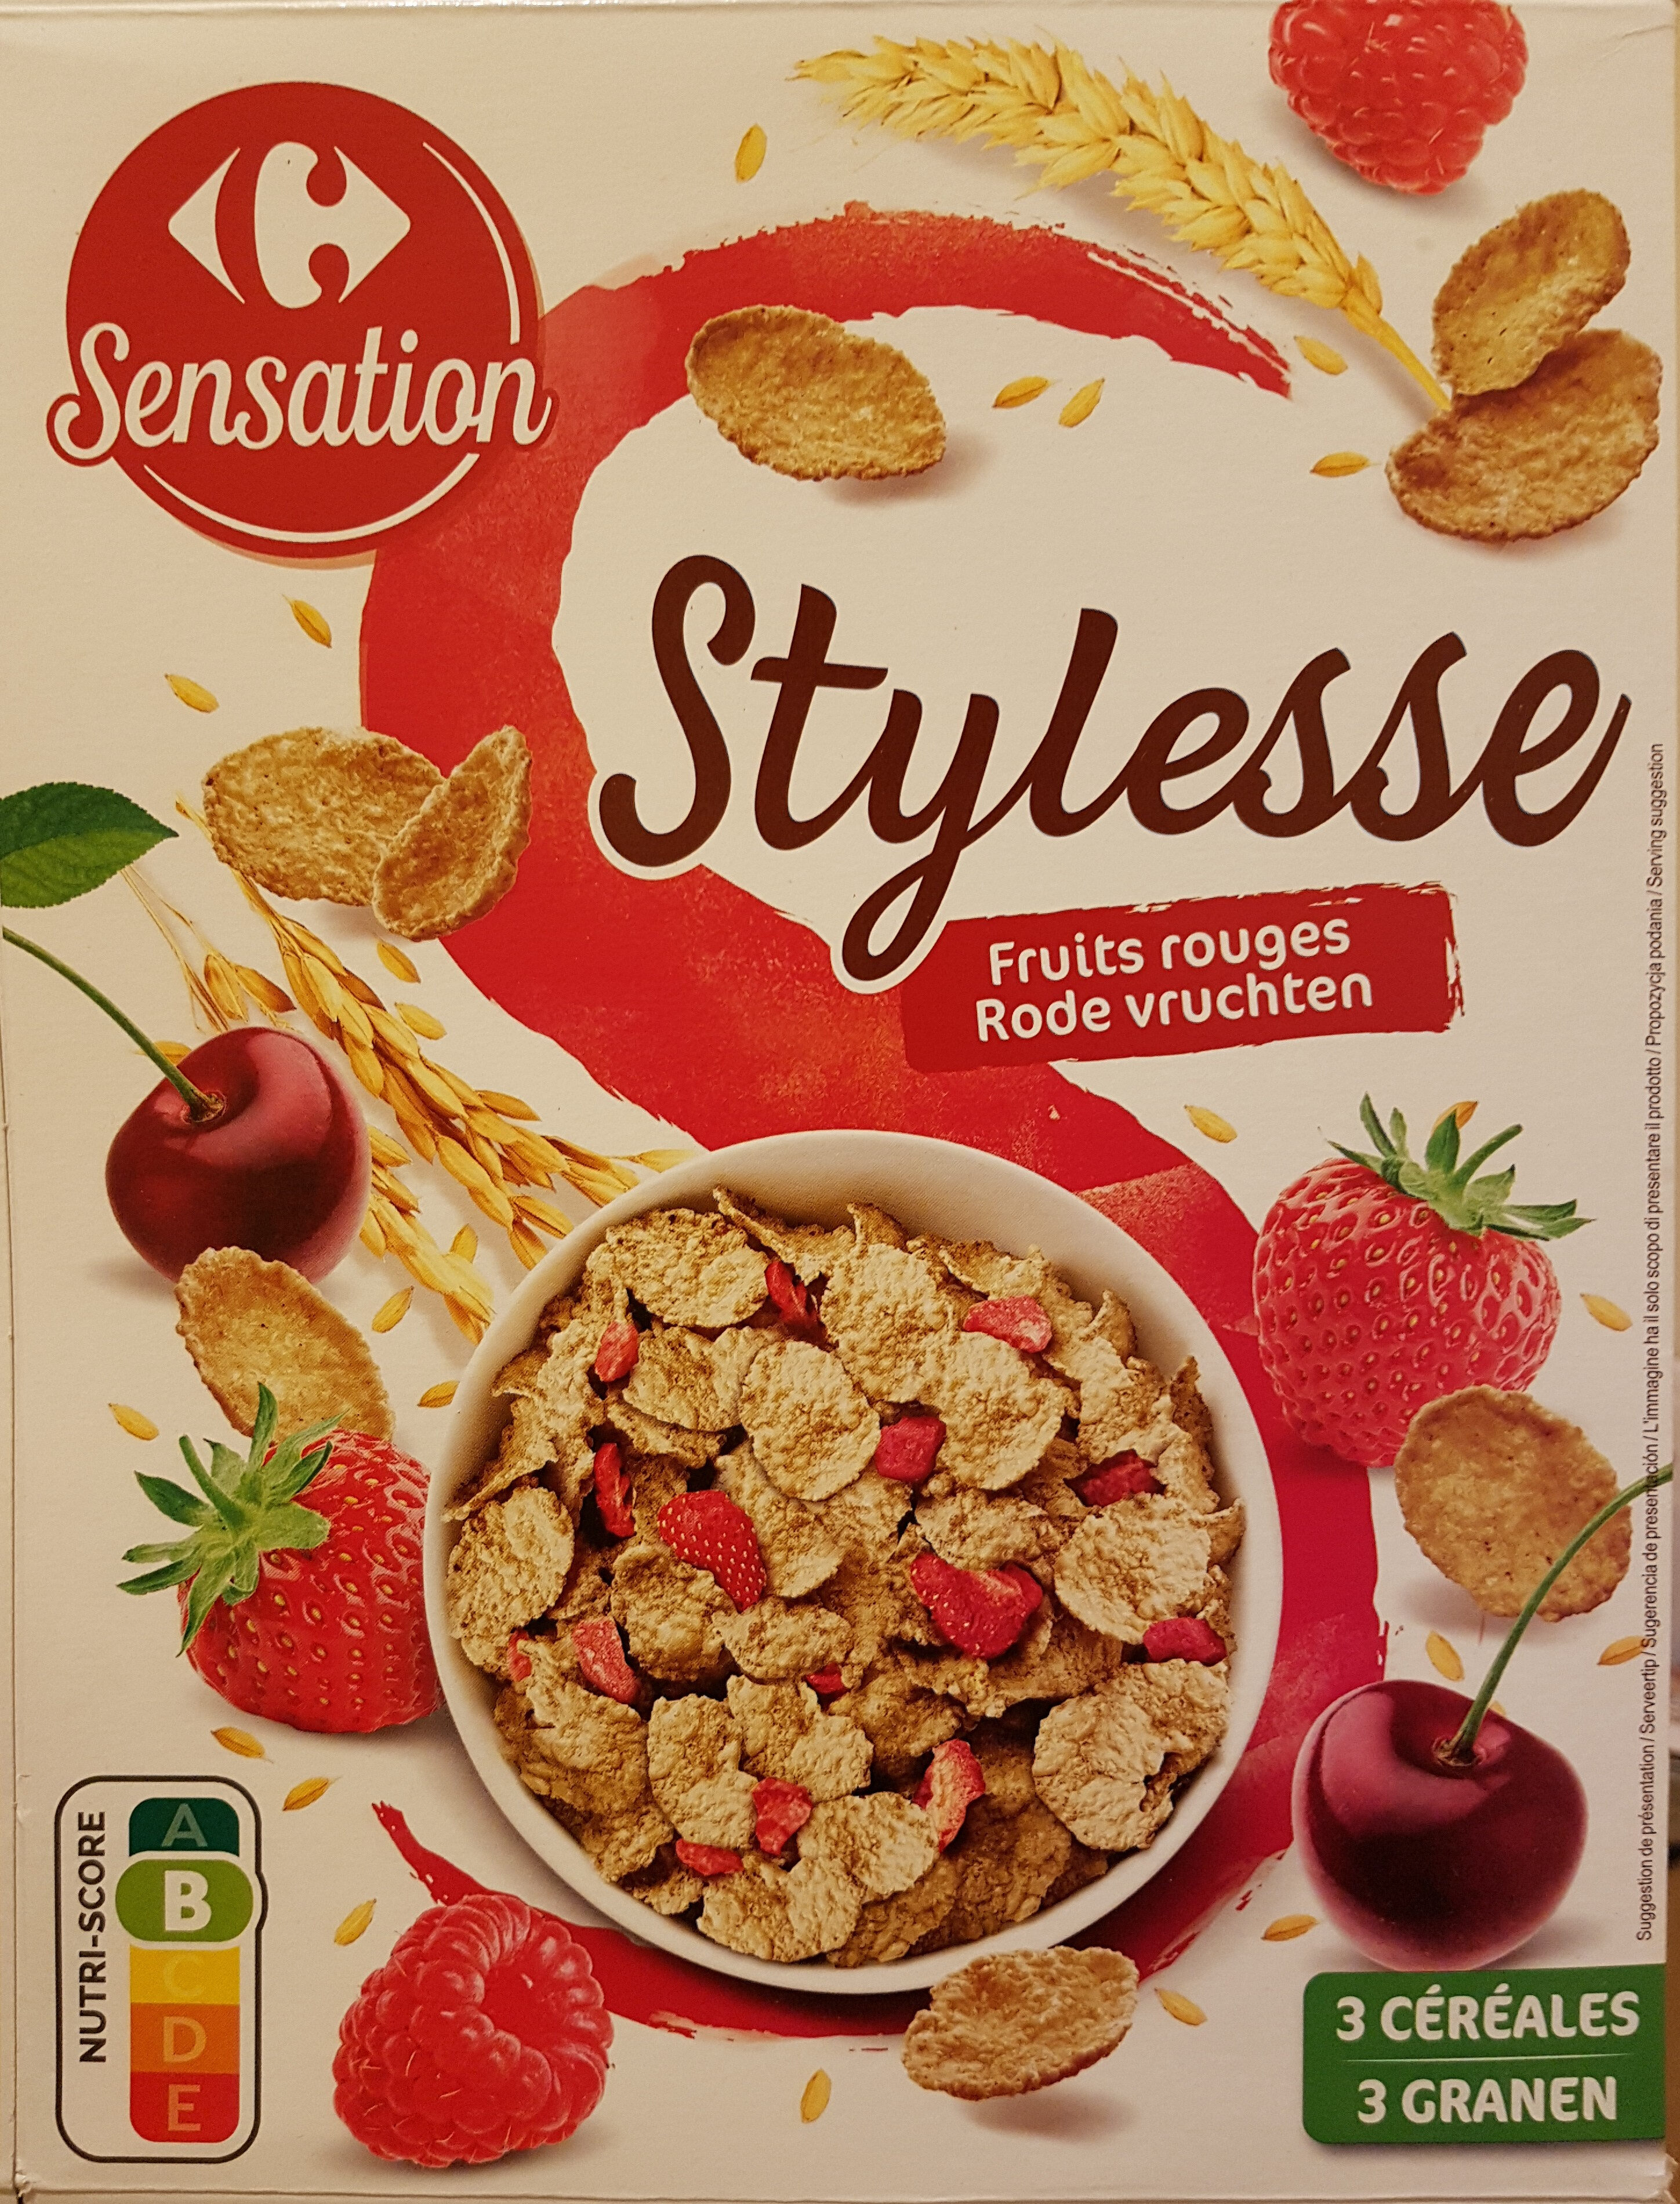 Stylesse Fruits rouges - Produkt - fr